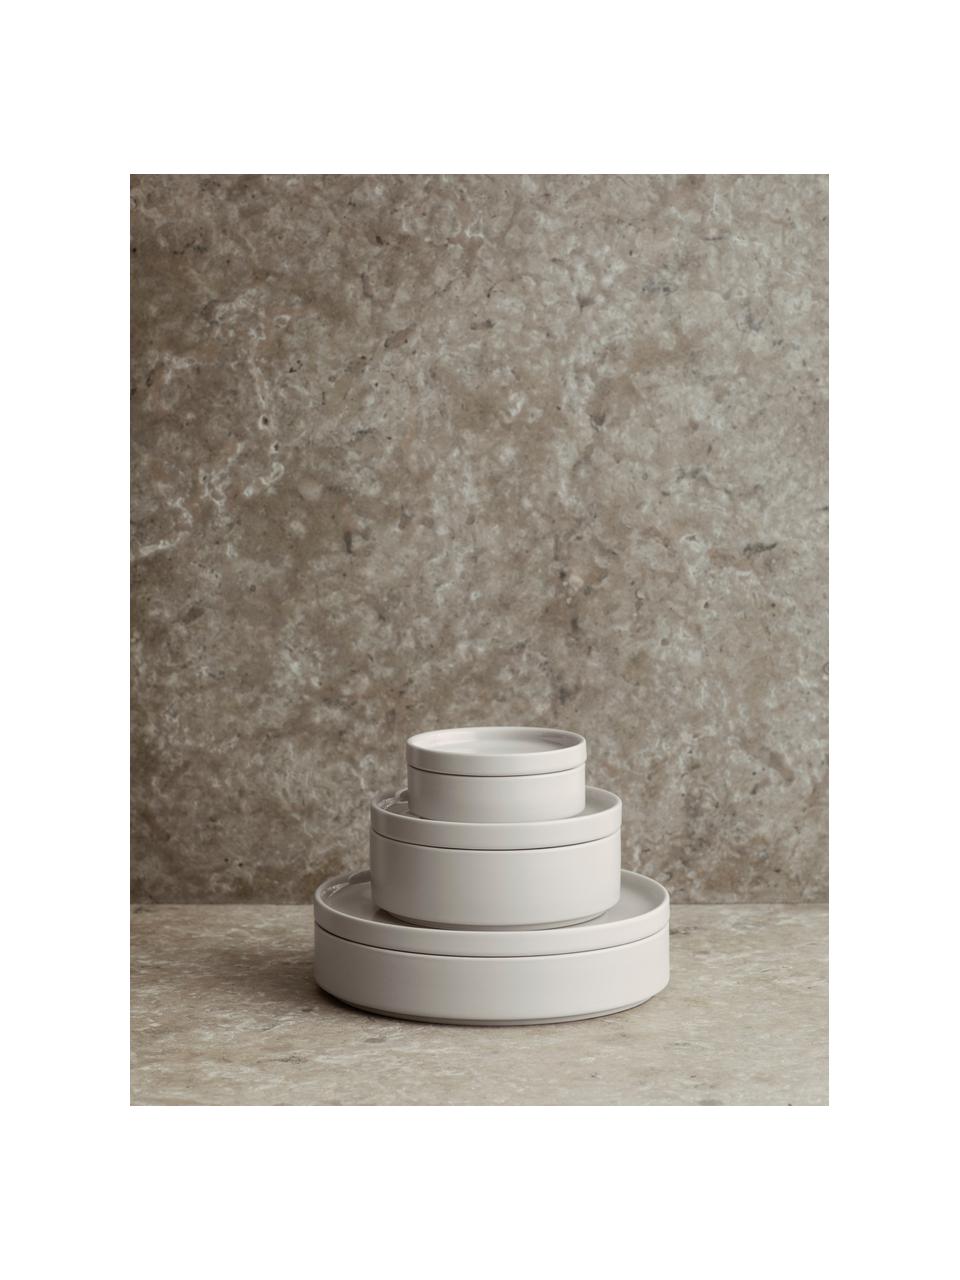 Piatto fondo opaco/lucido Pilar 6 pz, Ceramica, Bianco crema, Ø 20 x Alt. 4 cm